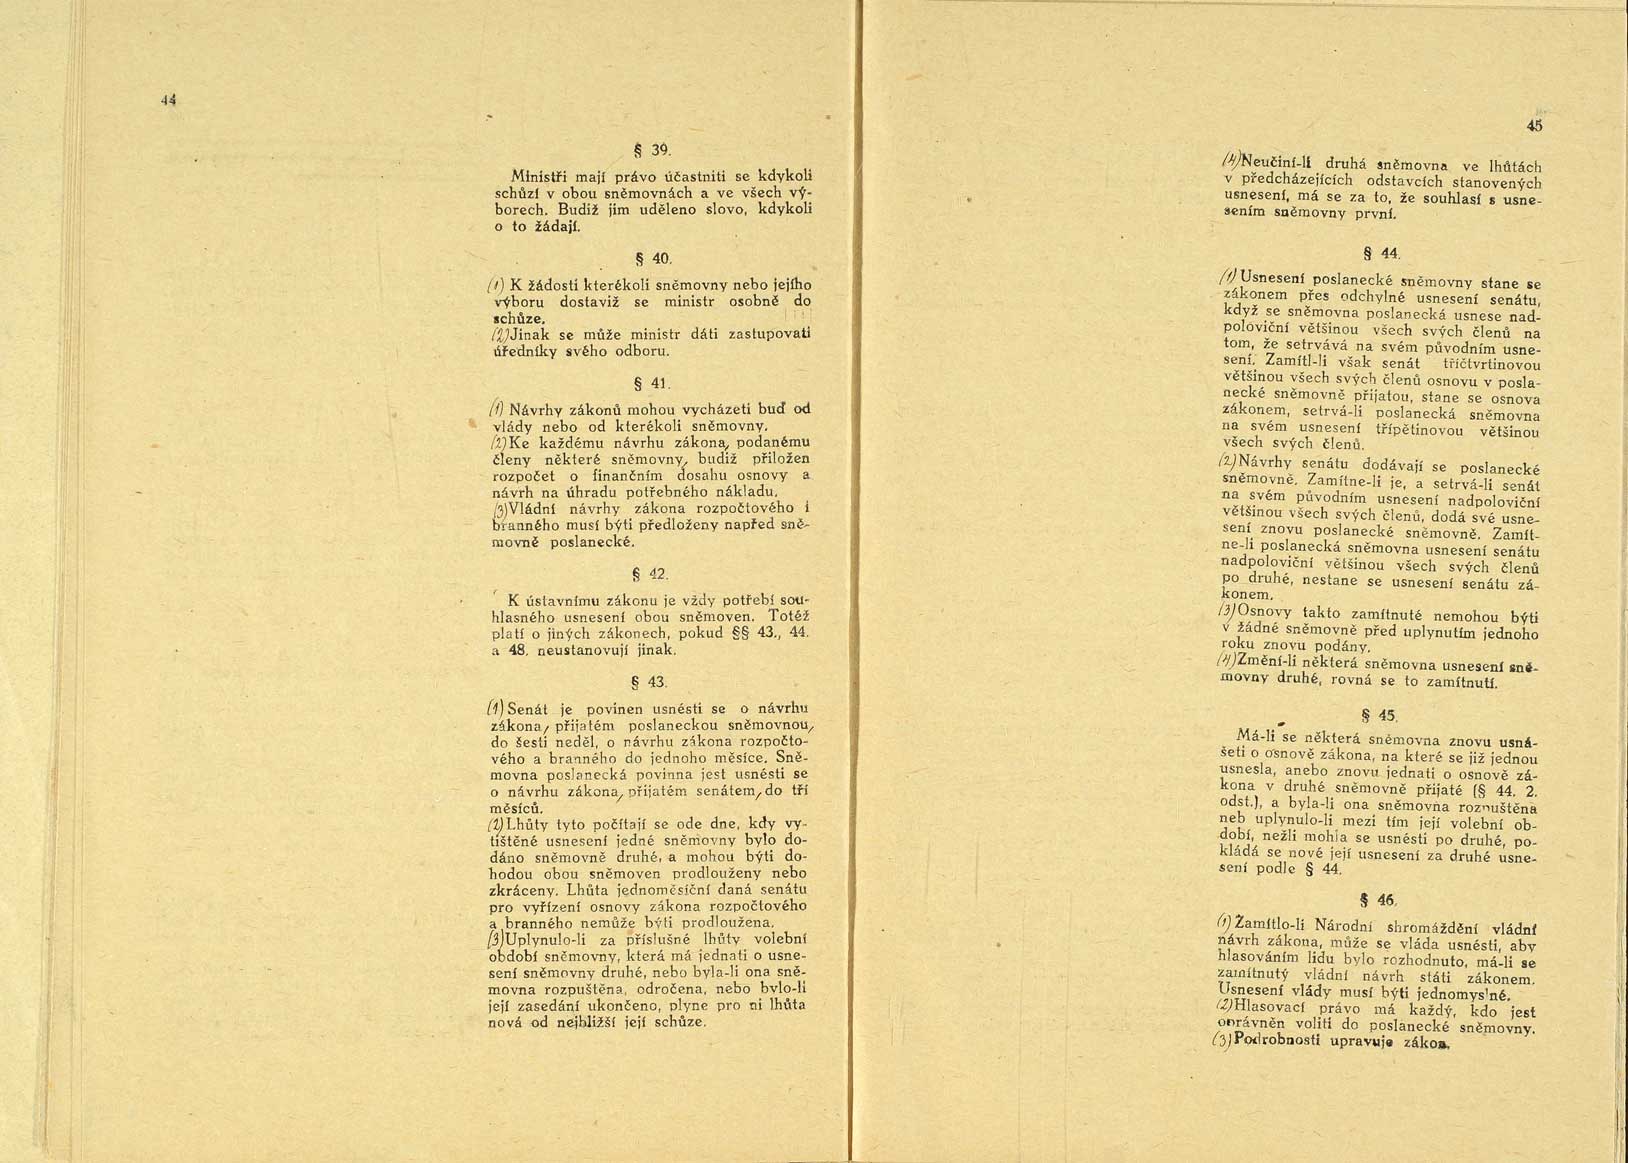 Originál ústavy publikované ve Sbírce zákonů a nařízení pod č. 121, 29. 2. 1920